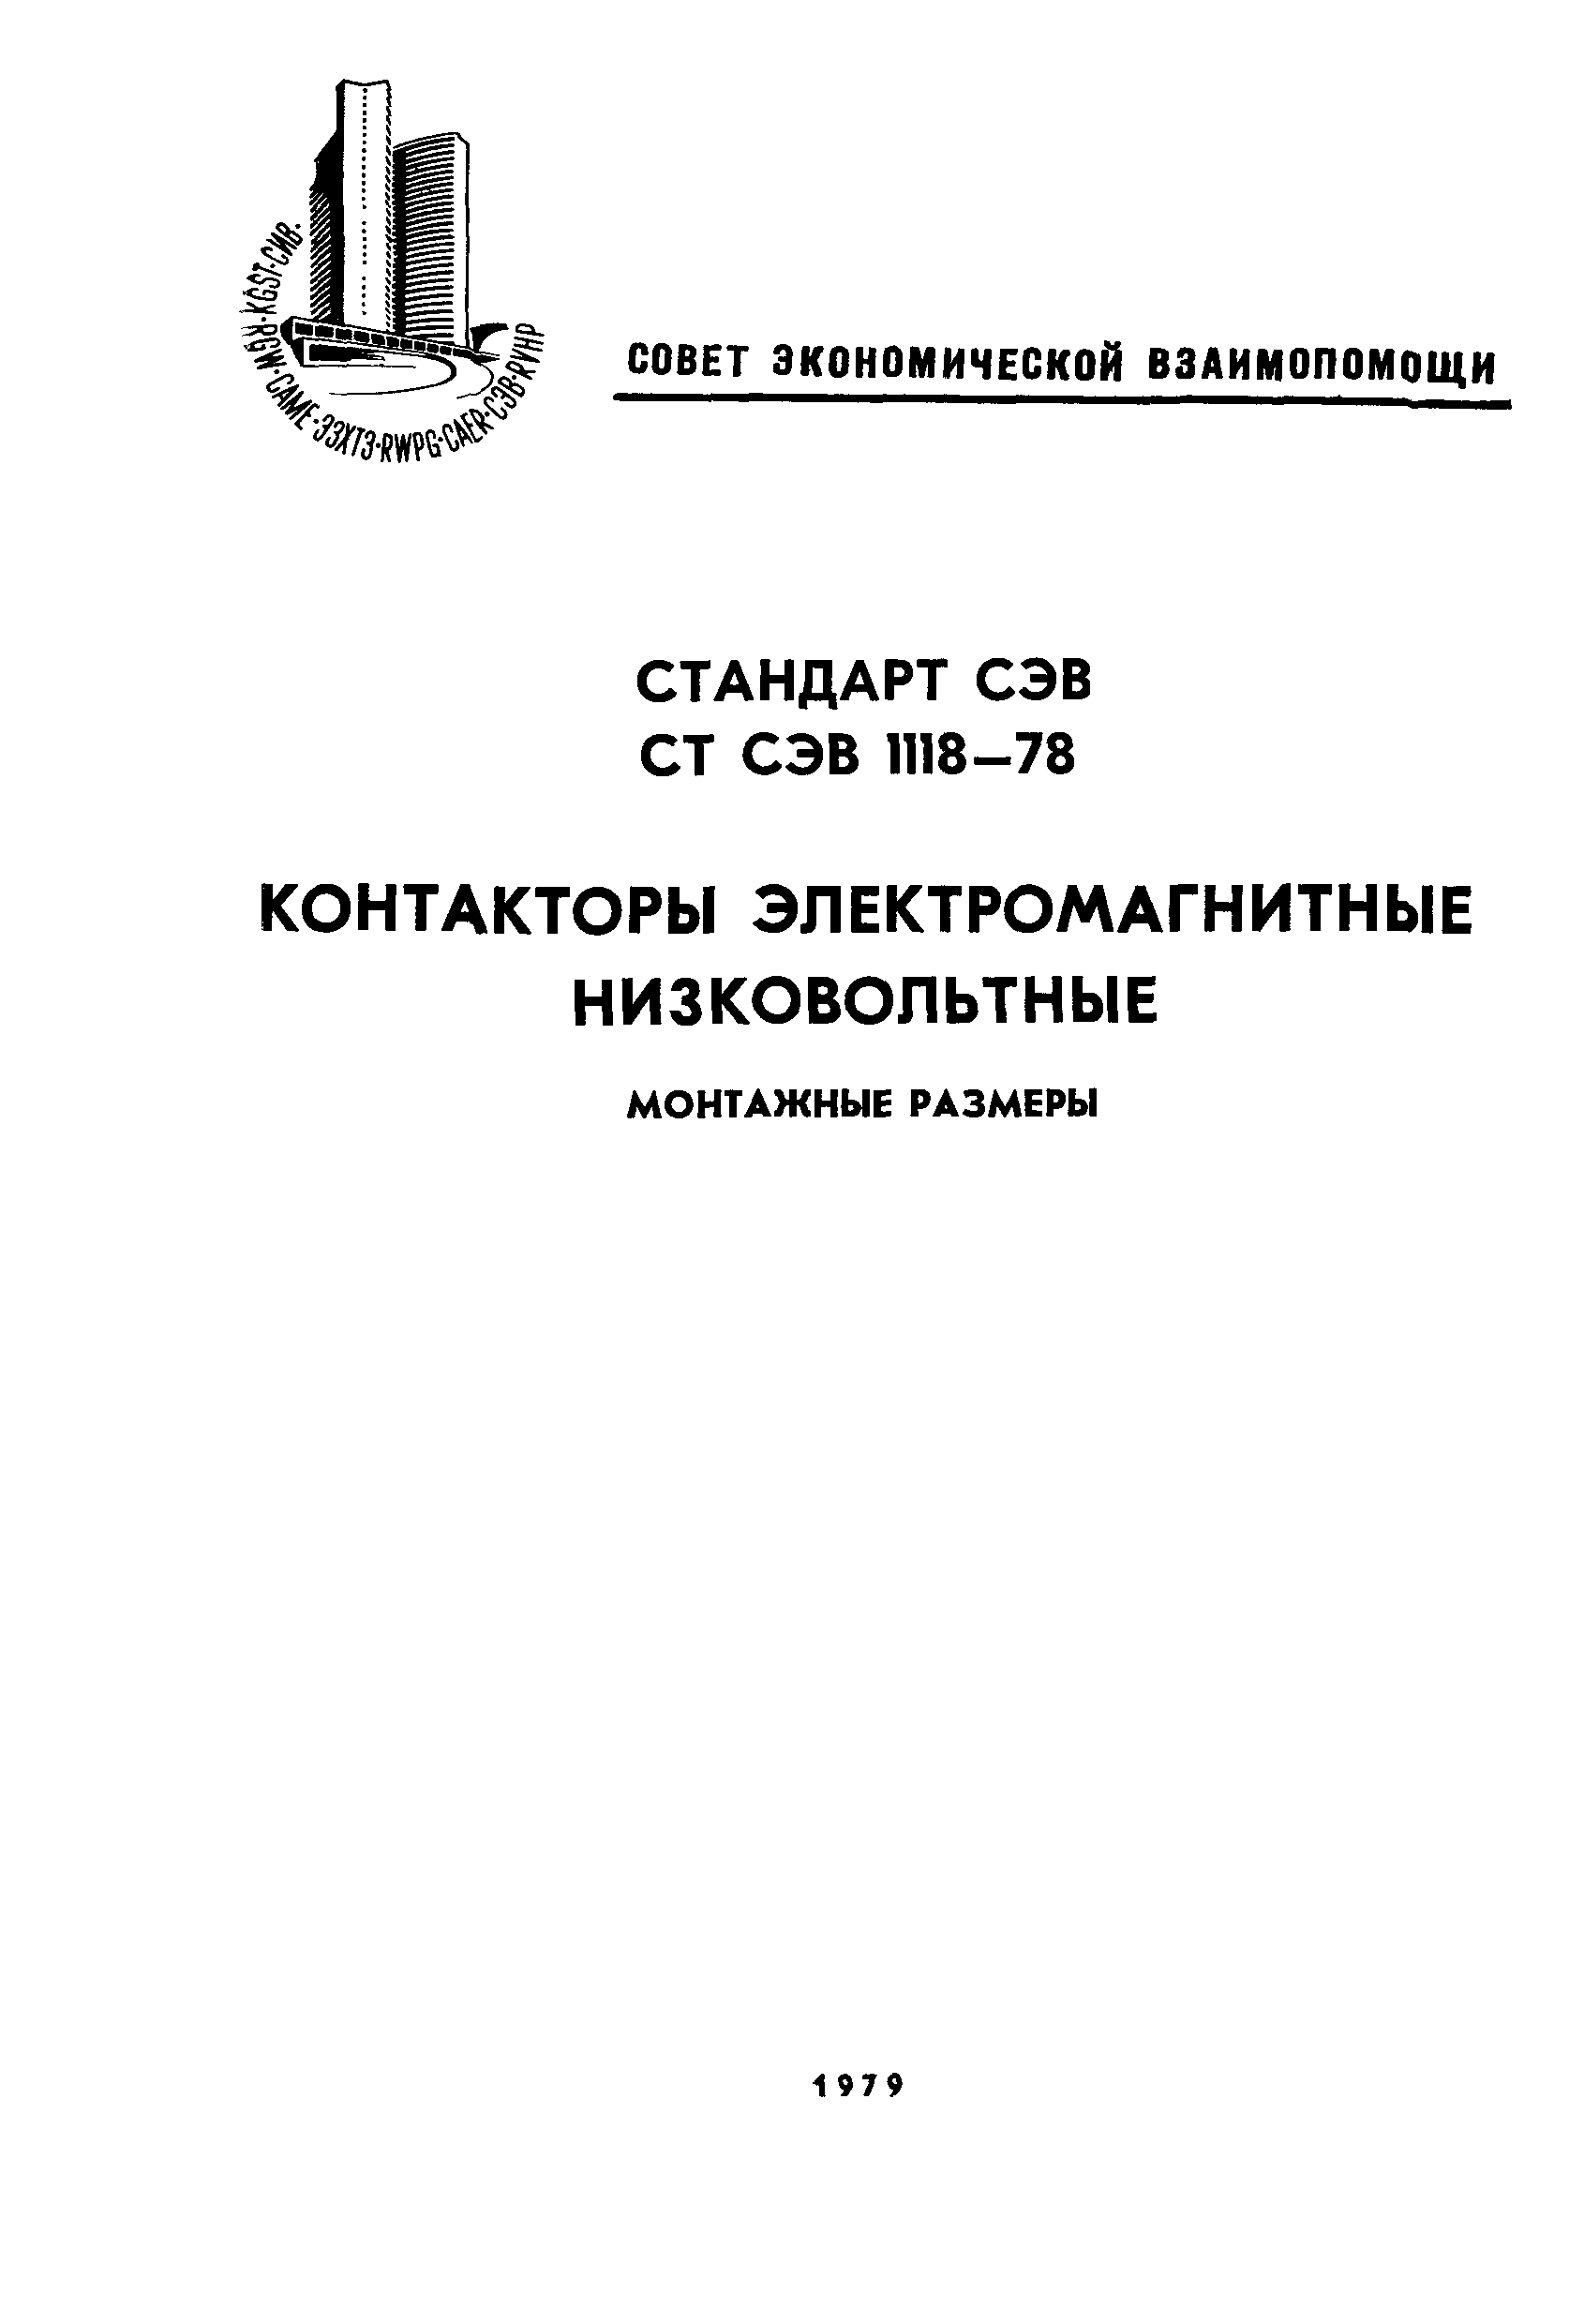 СТ СЭВ 1118-78